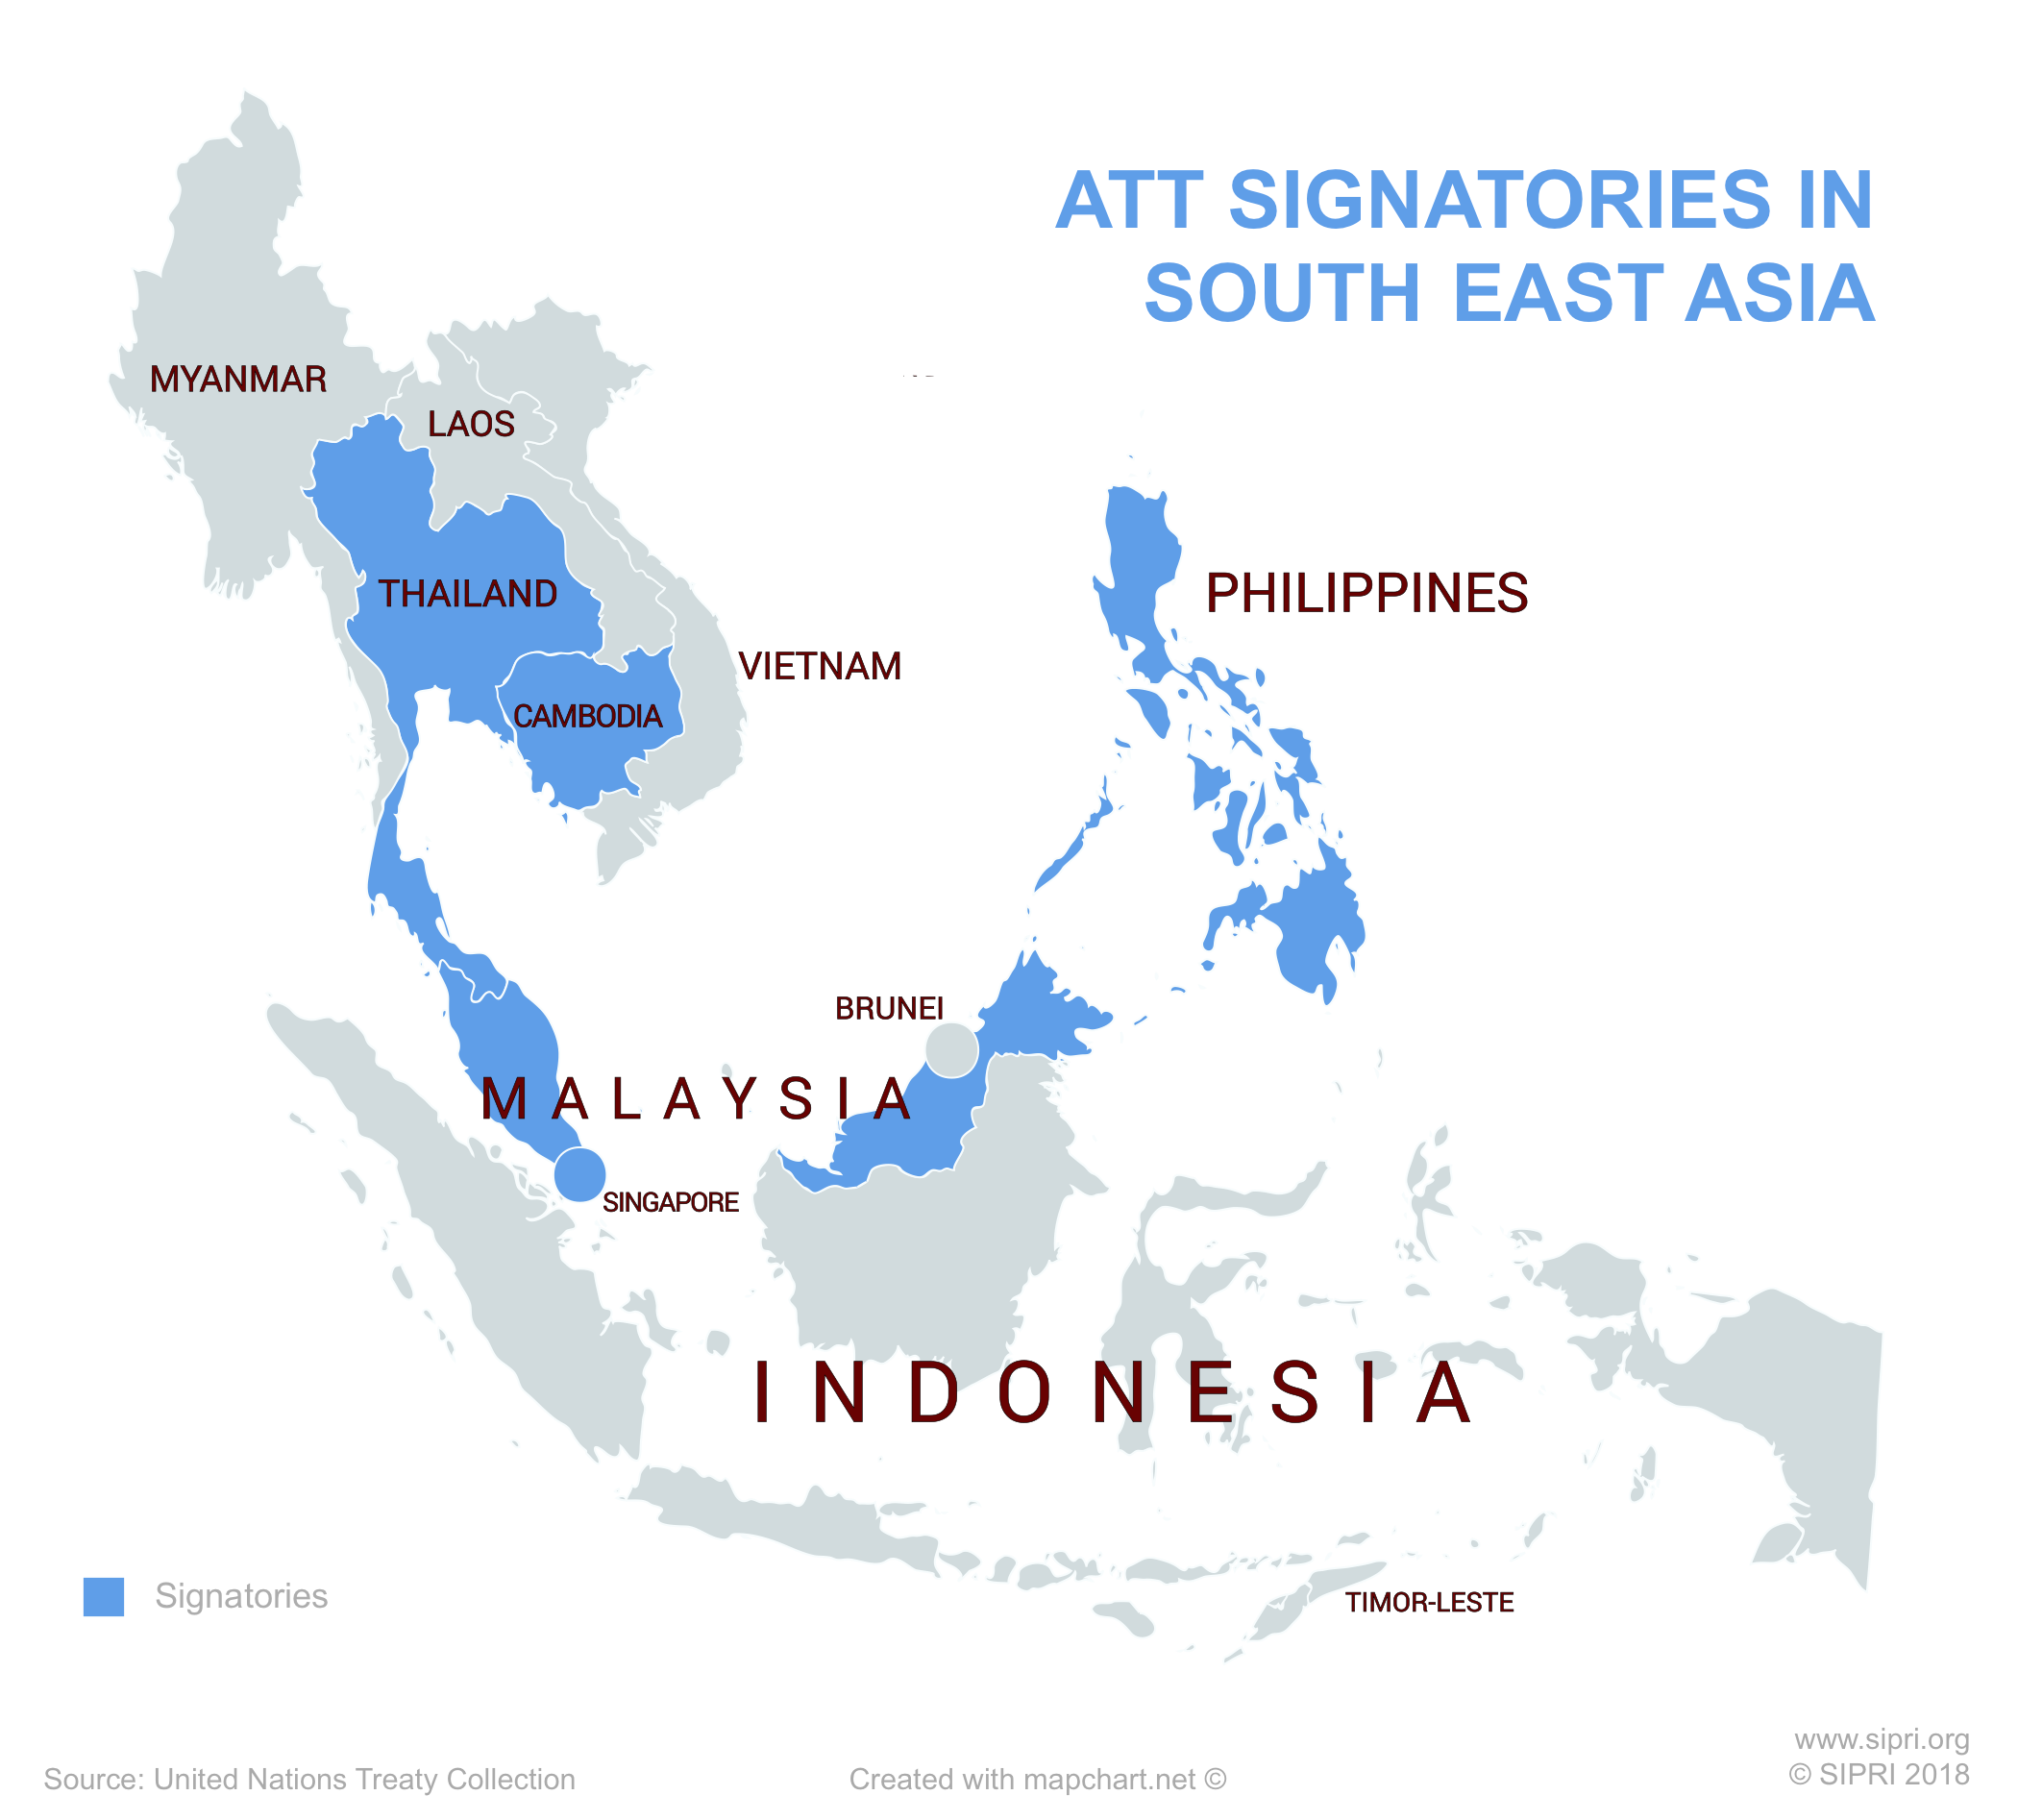 ATT signatories in South East Asia